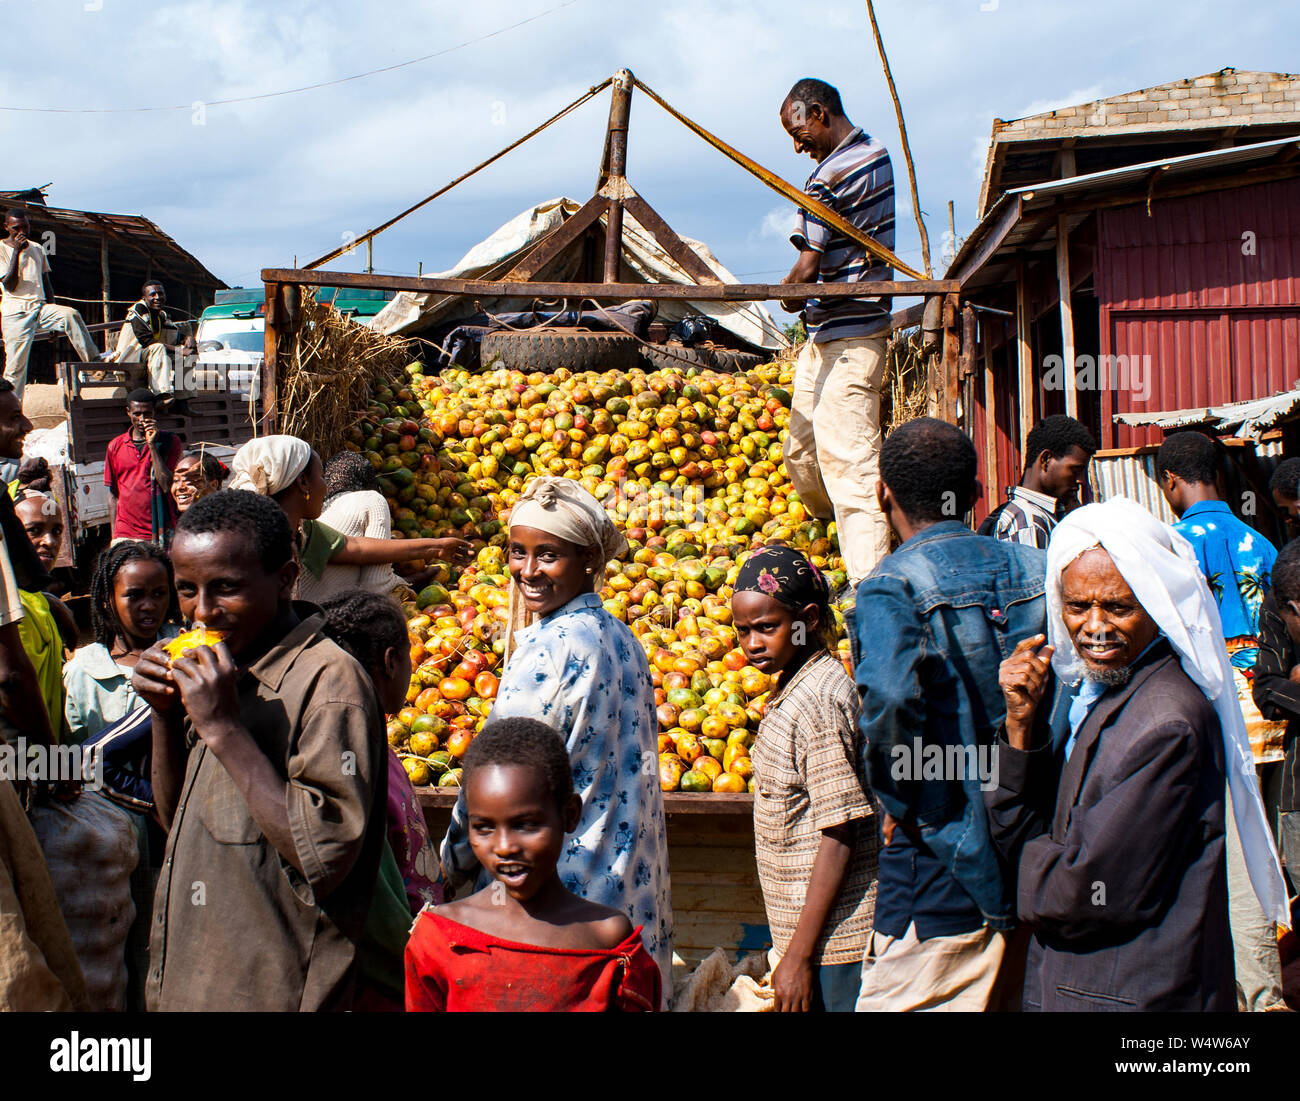 Vendita camion manghi circondato da persone in un mercato rurale in Illubabor, Etiopia Foto Stock